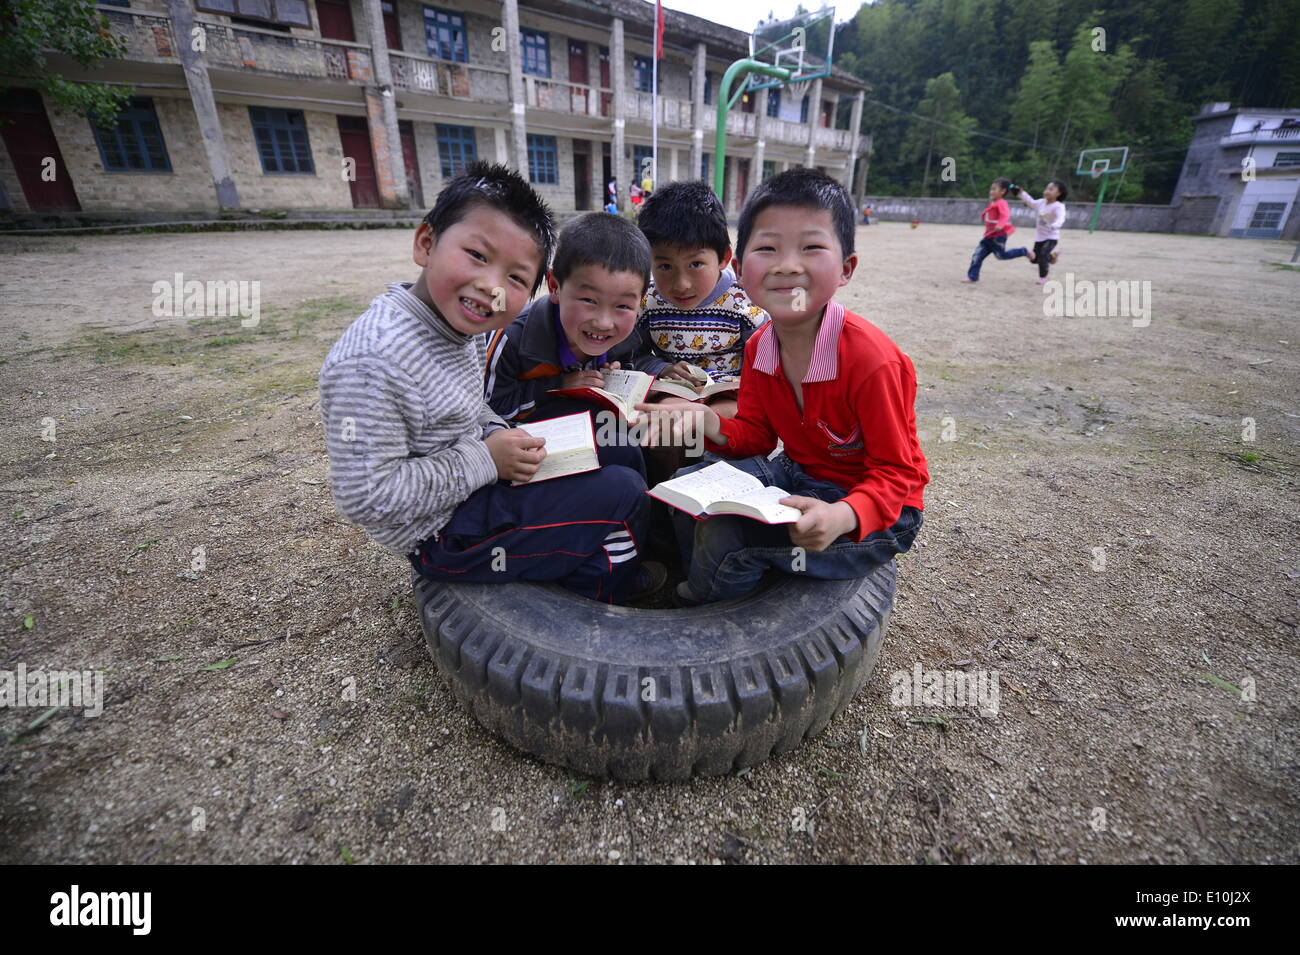 (140521) -- WANZAI COUNTY, 21 maggio 2014 (Xinhua) -- quattro studenti della Cram in un pneumatico dei rifiuti come essi scorri i dizionari dato dai donatori pubblici Liyuan presso la scuola elementare nel villaggio Xikeng sotto Wanzai contea di Yichun, Cina orientale della provincia di Jiangxi, 20 maggio 2014. La mancanza di insegnanti qualificati è stata un problema onnipresente che preoccupa molte scuole elementari in Cina rurale. Le autorità competenti per l'istruzione di Wanzai County hanno lanciato un cinque anni di programma di formazione del corpo docente nel 2014 per affrontare la domanda per gli insegnanti nella contea di aree rurali. Ogni anno il programma riceveranno 30 junior alta richiedente Foto Stock